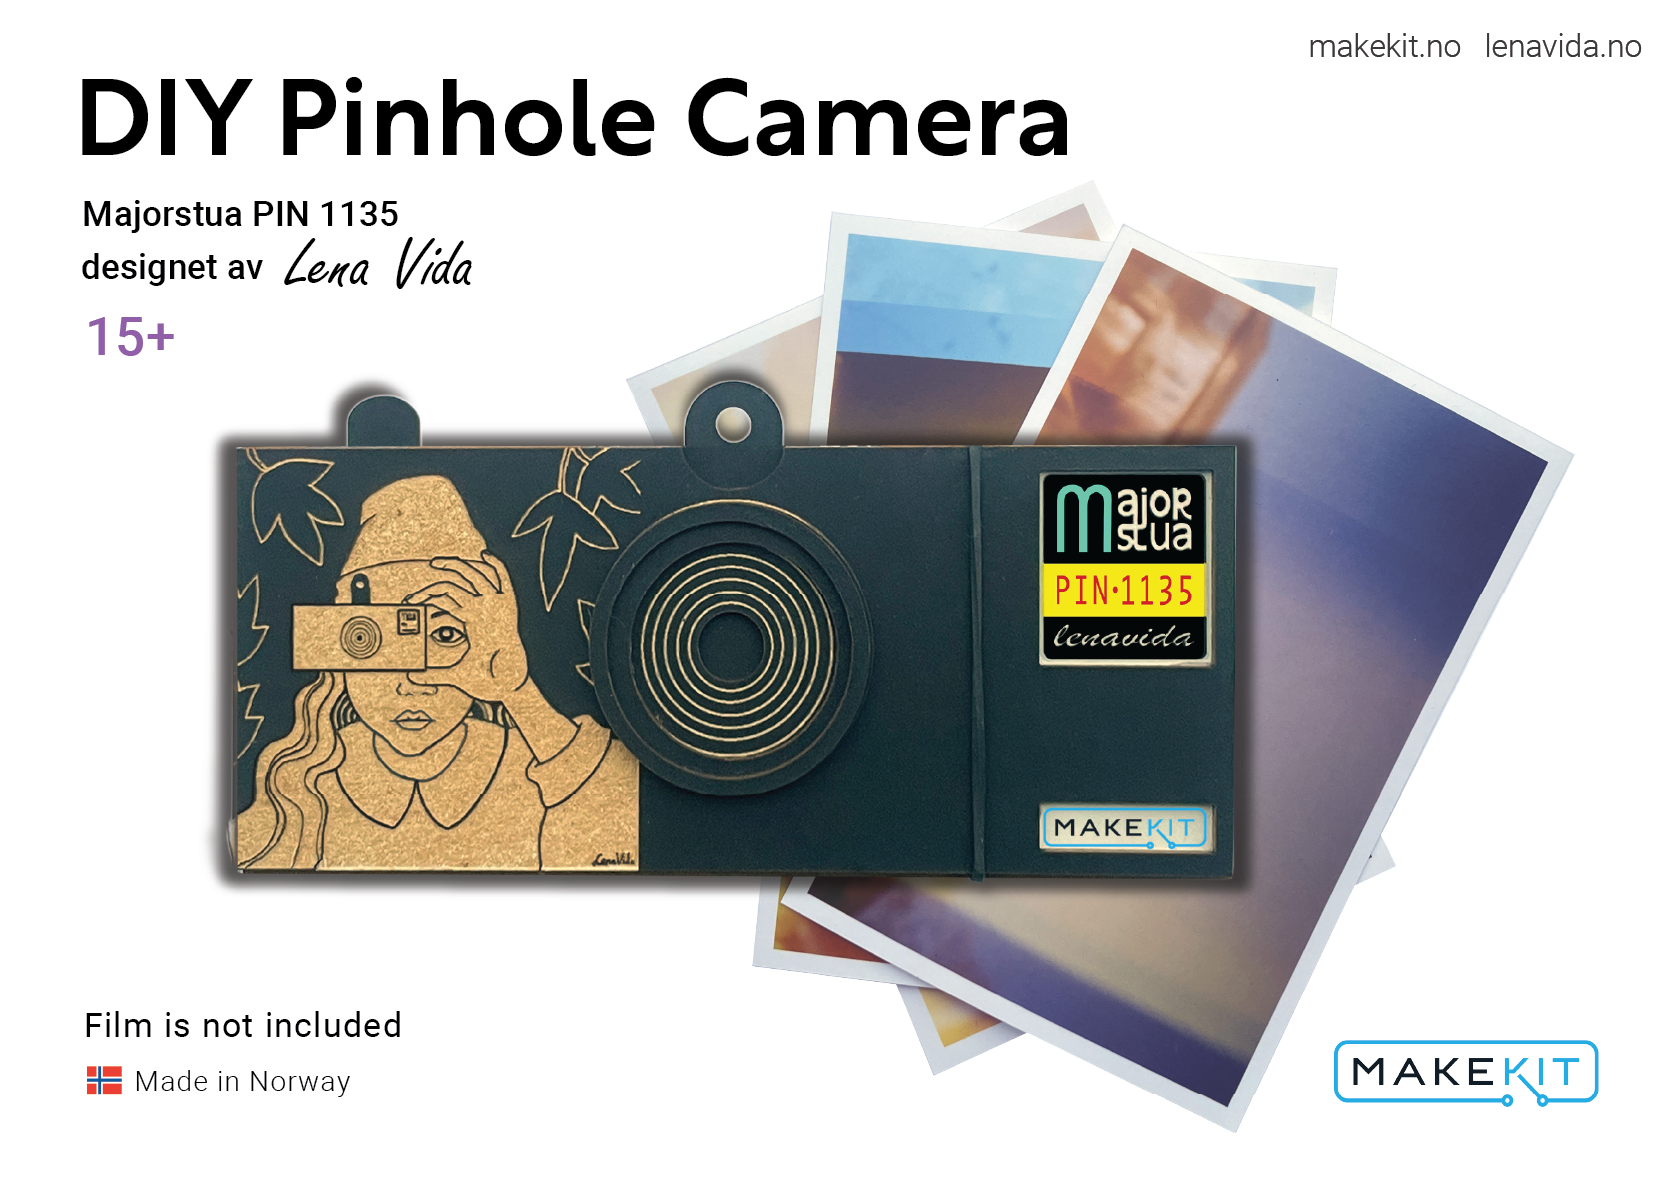 Pinhole camera Majorstua 1135